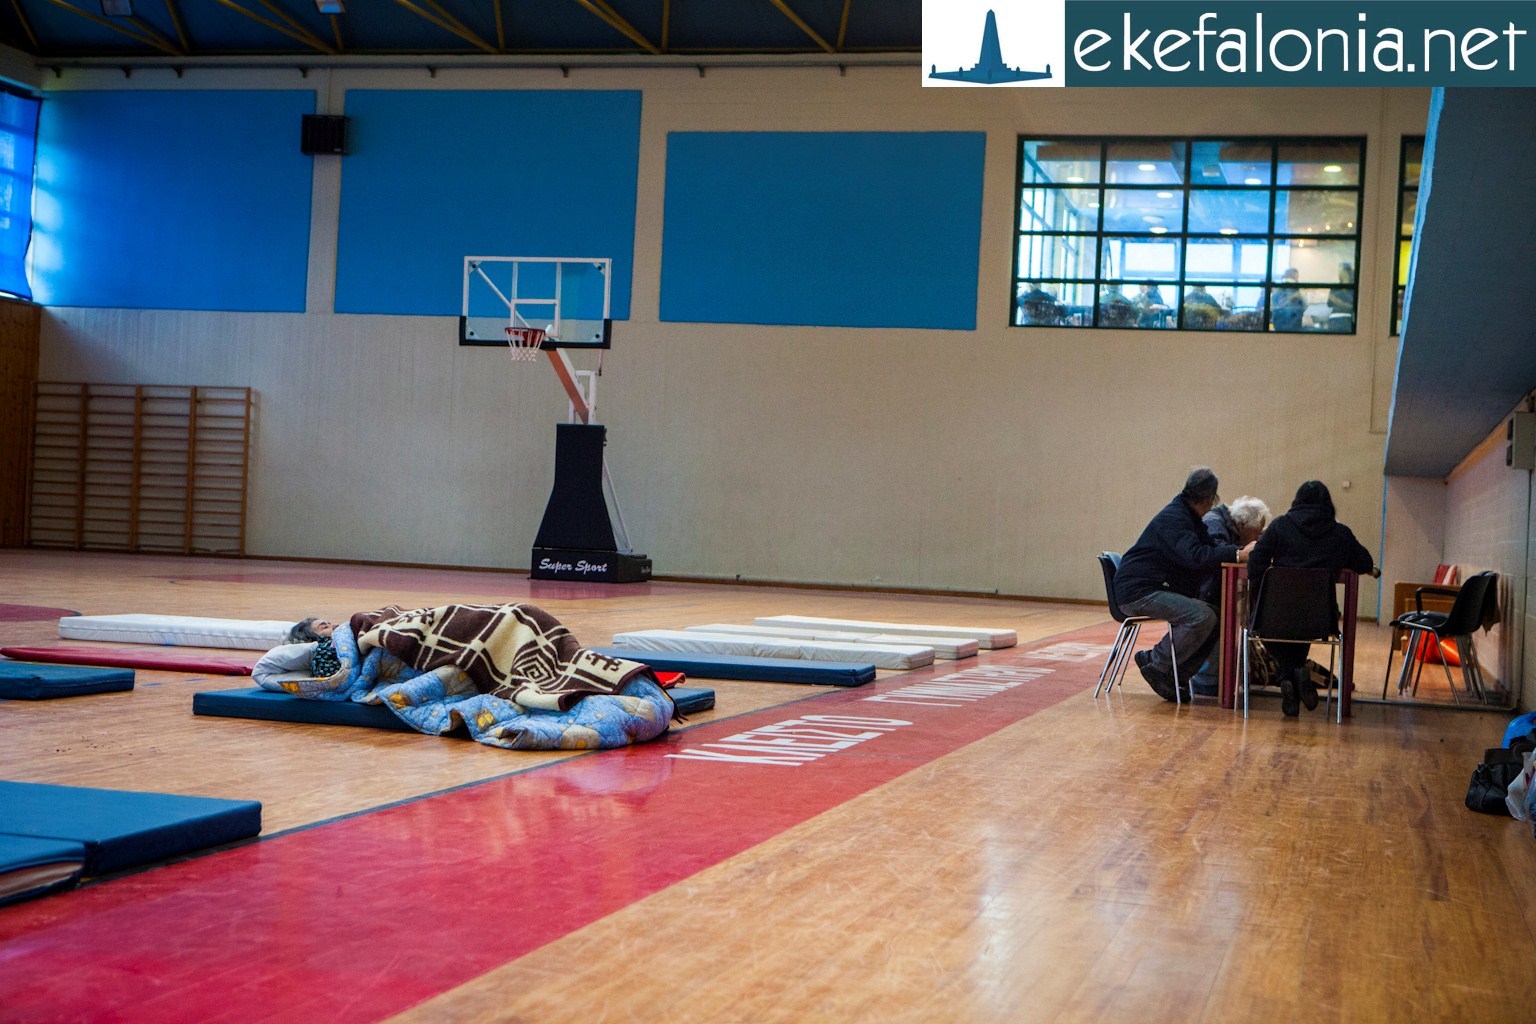 Στα όριά τους οι κάτοικοι της Κεφαλονιάς – Ηλικιωμένοι κοιμήθηκαν στο πάτωμα κλειστού γυμναστηρίου